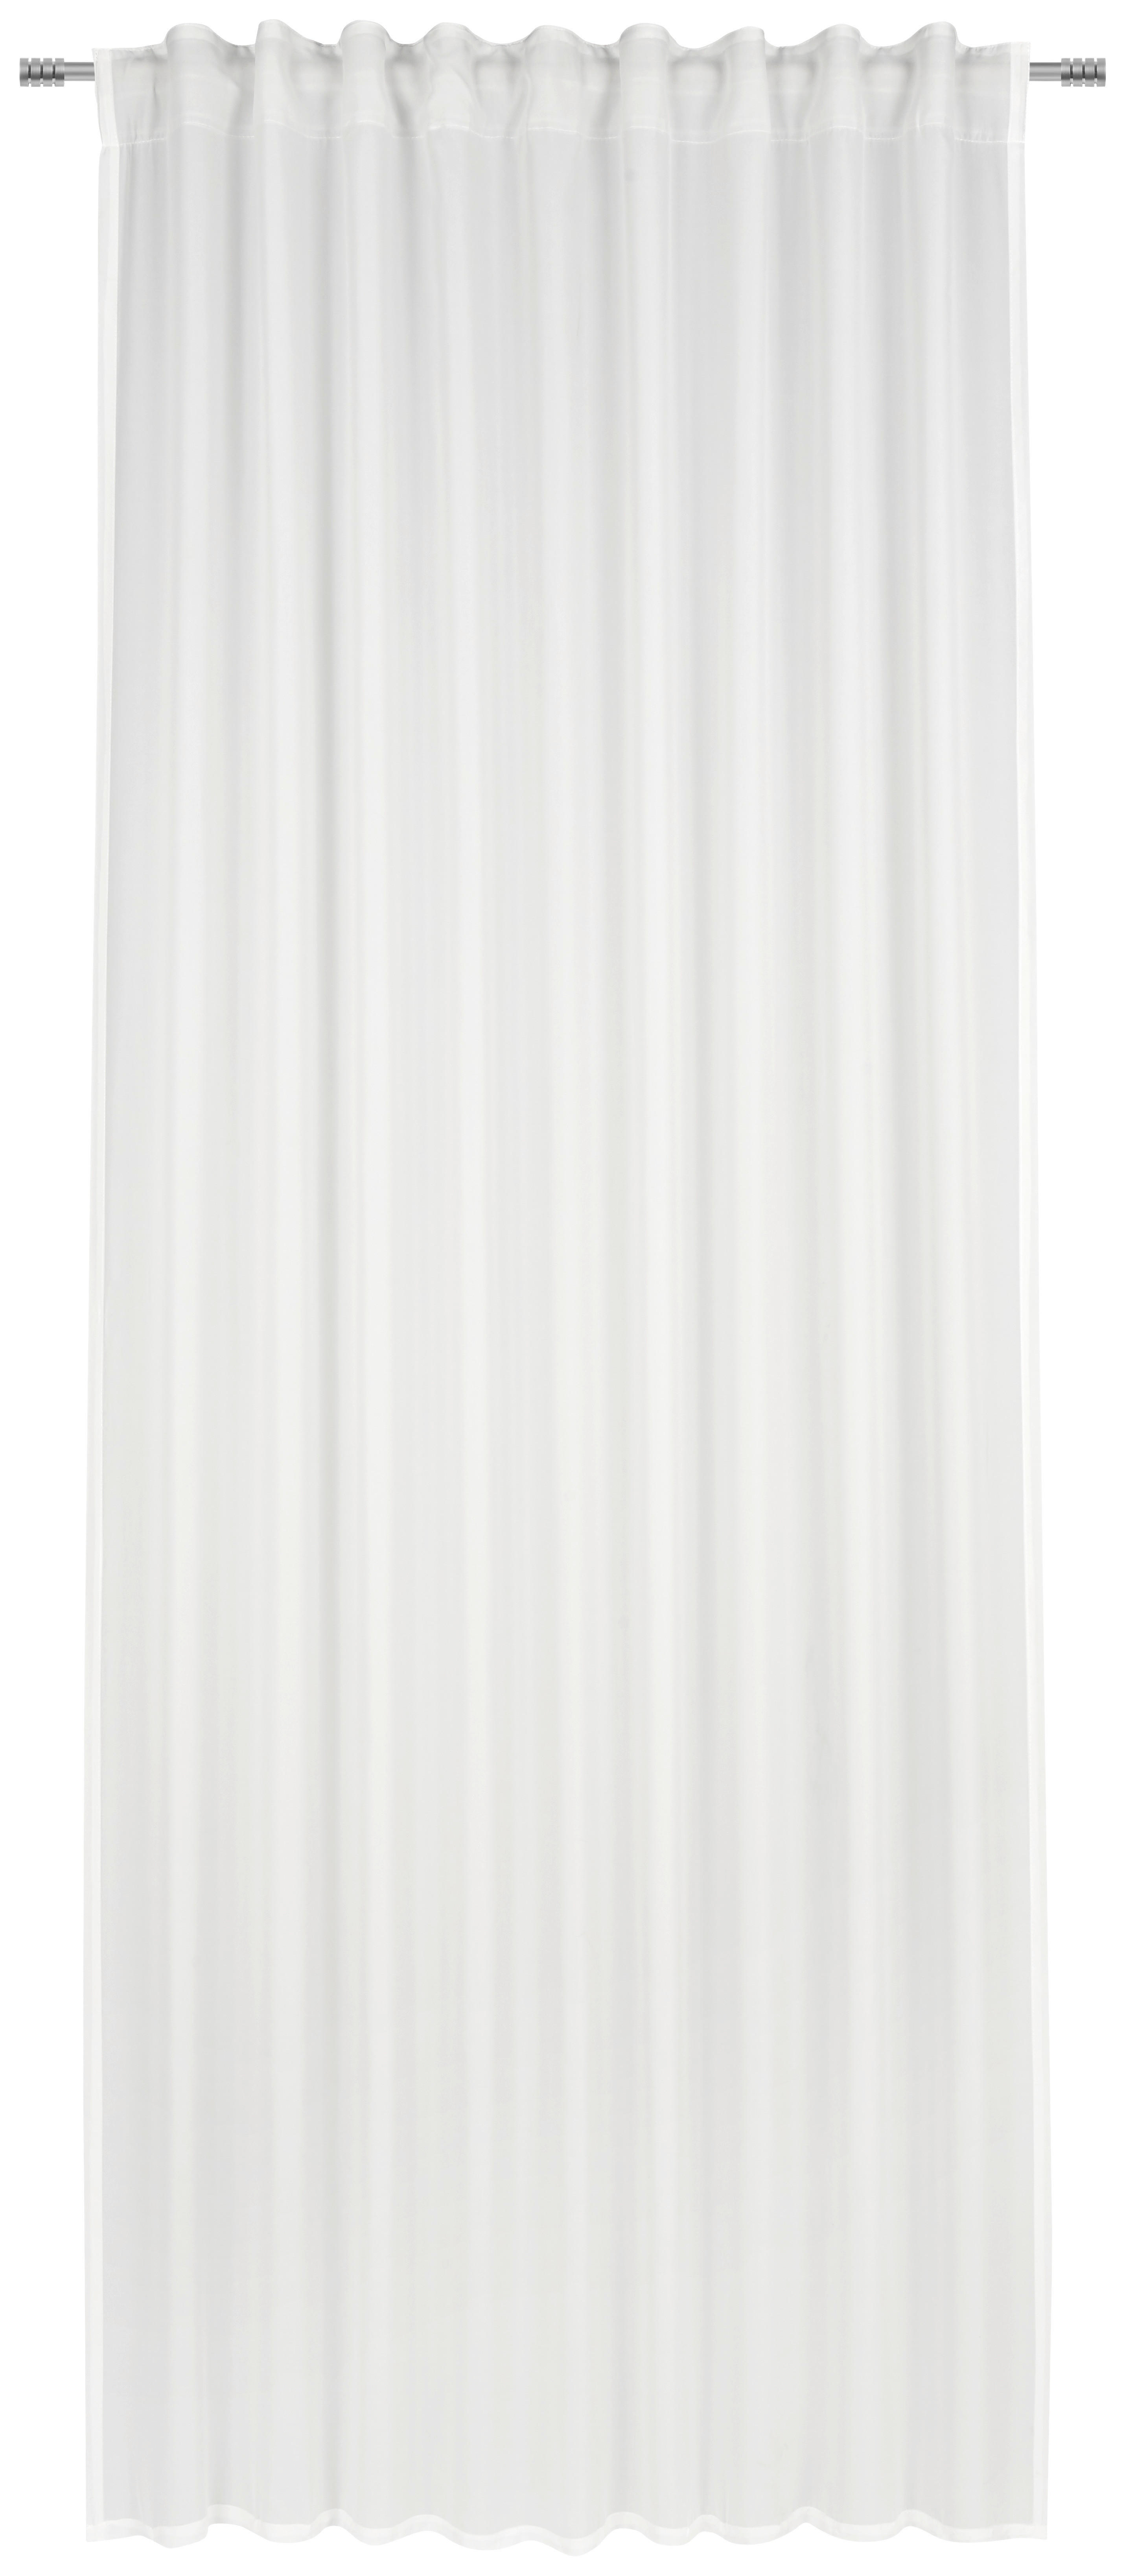 KÉSZFÜGGÖNY Részben áttetsző  - Fehér, Basics, Textil (140/245cm) - Esposa